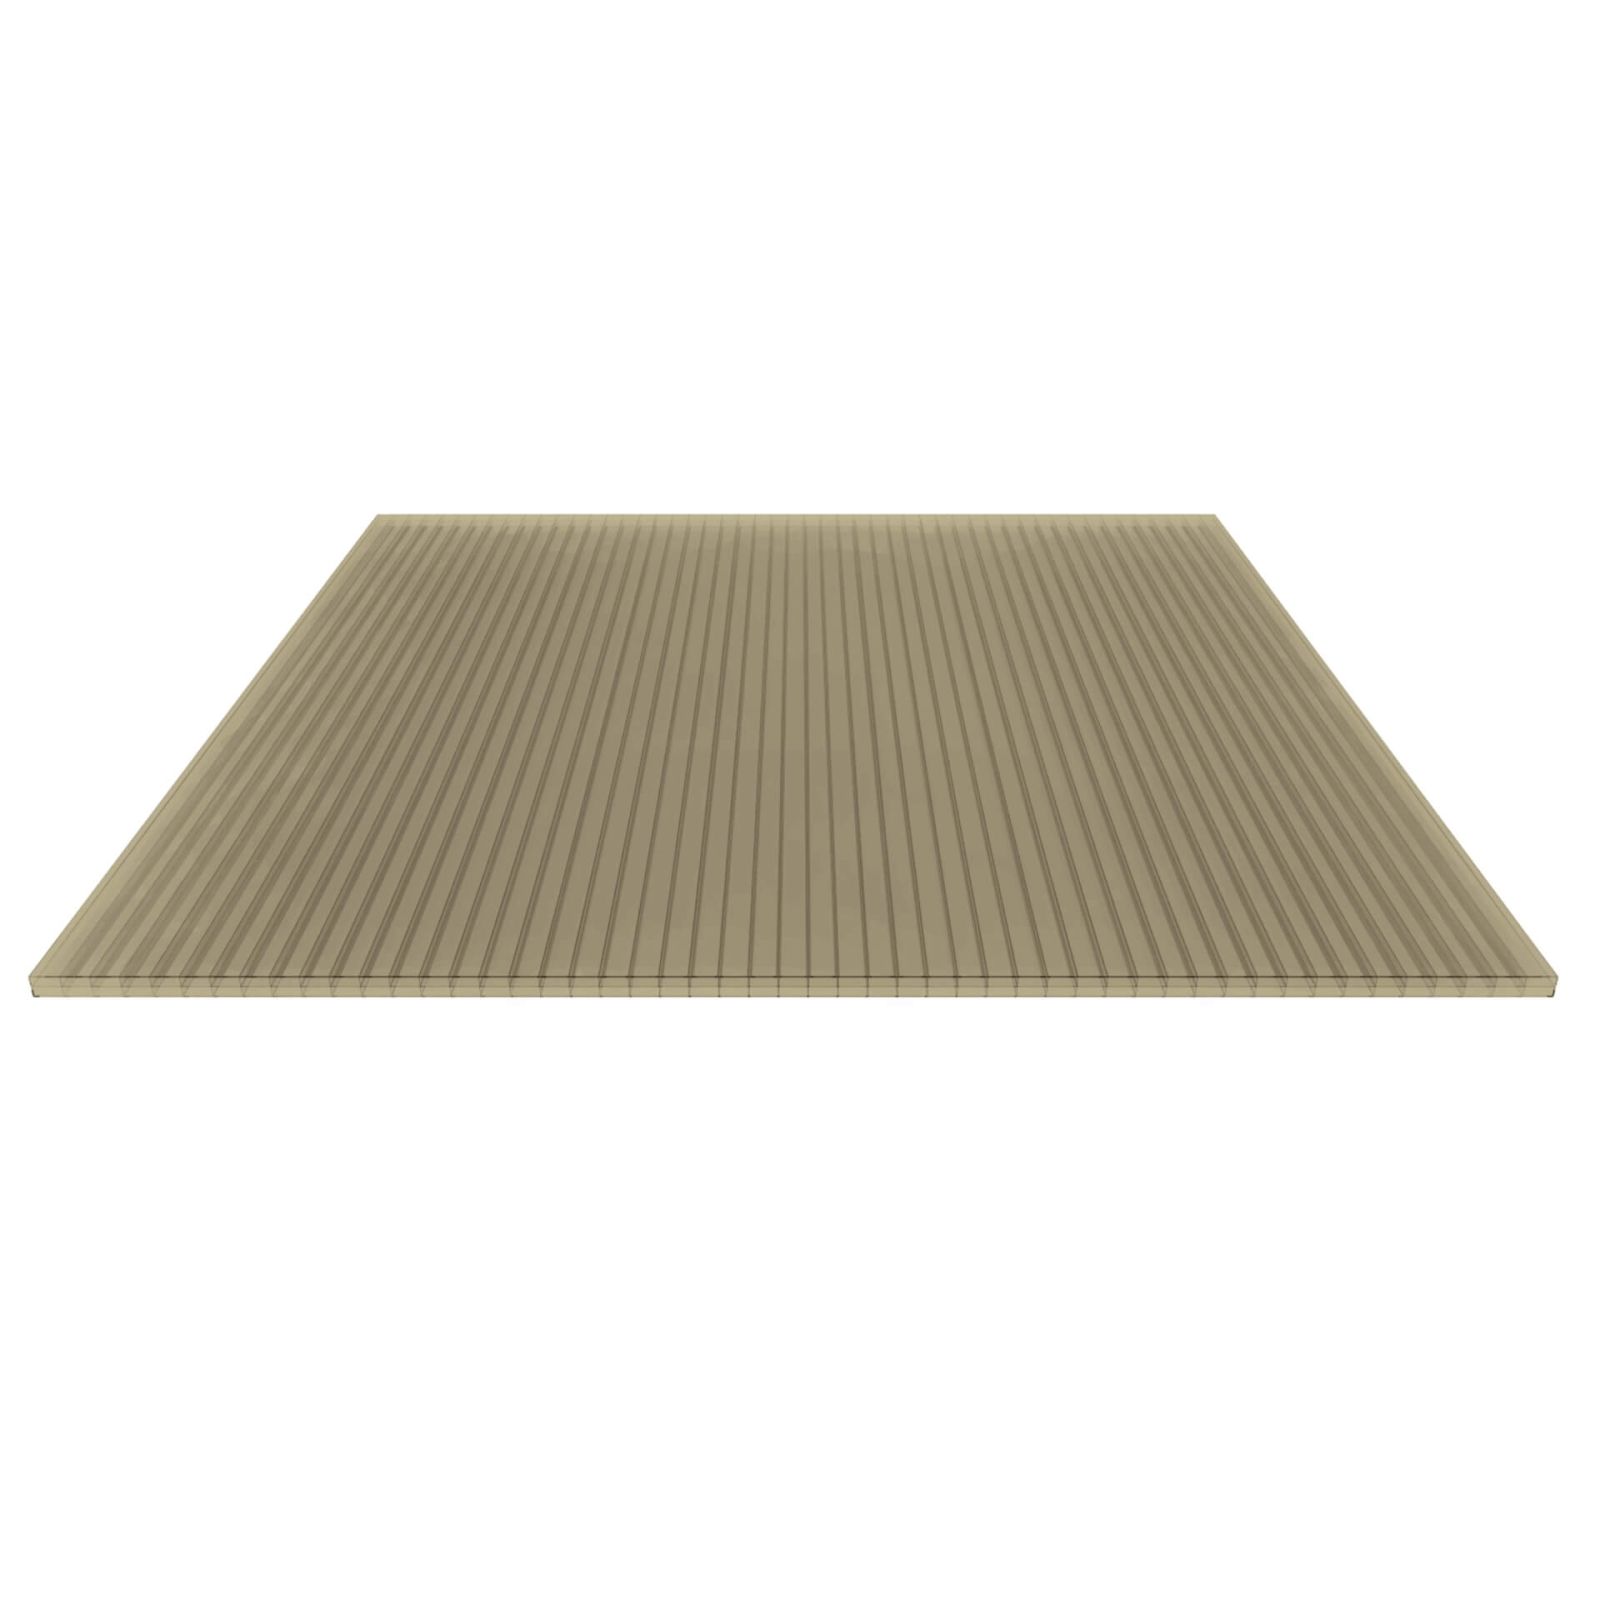 Polycarbonat Stegplatte | 16 mm | Profil Mendiger | Sparpaket | Plattenbreite 1200 mm | Bronze | Breite 3,75 m | Länge 2,00 m #5